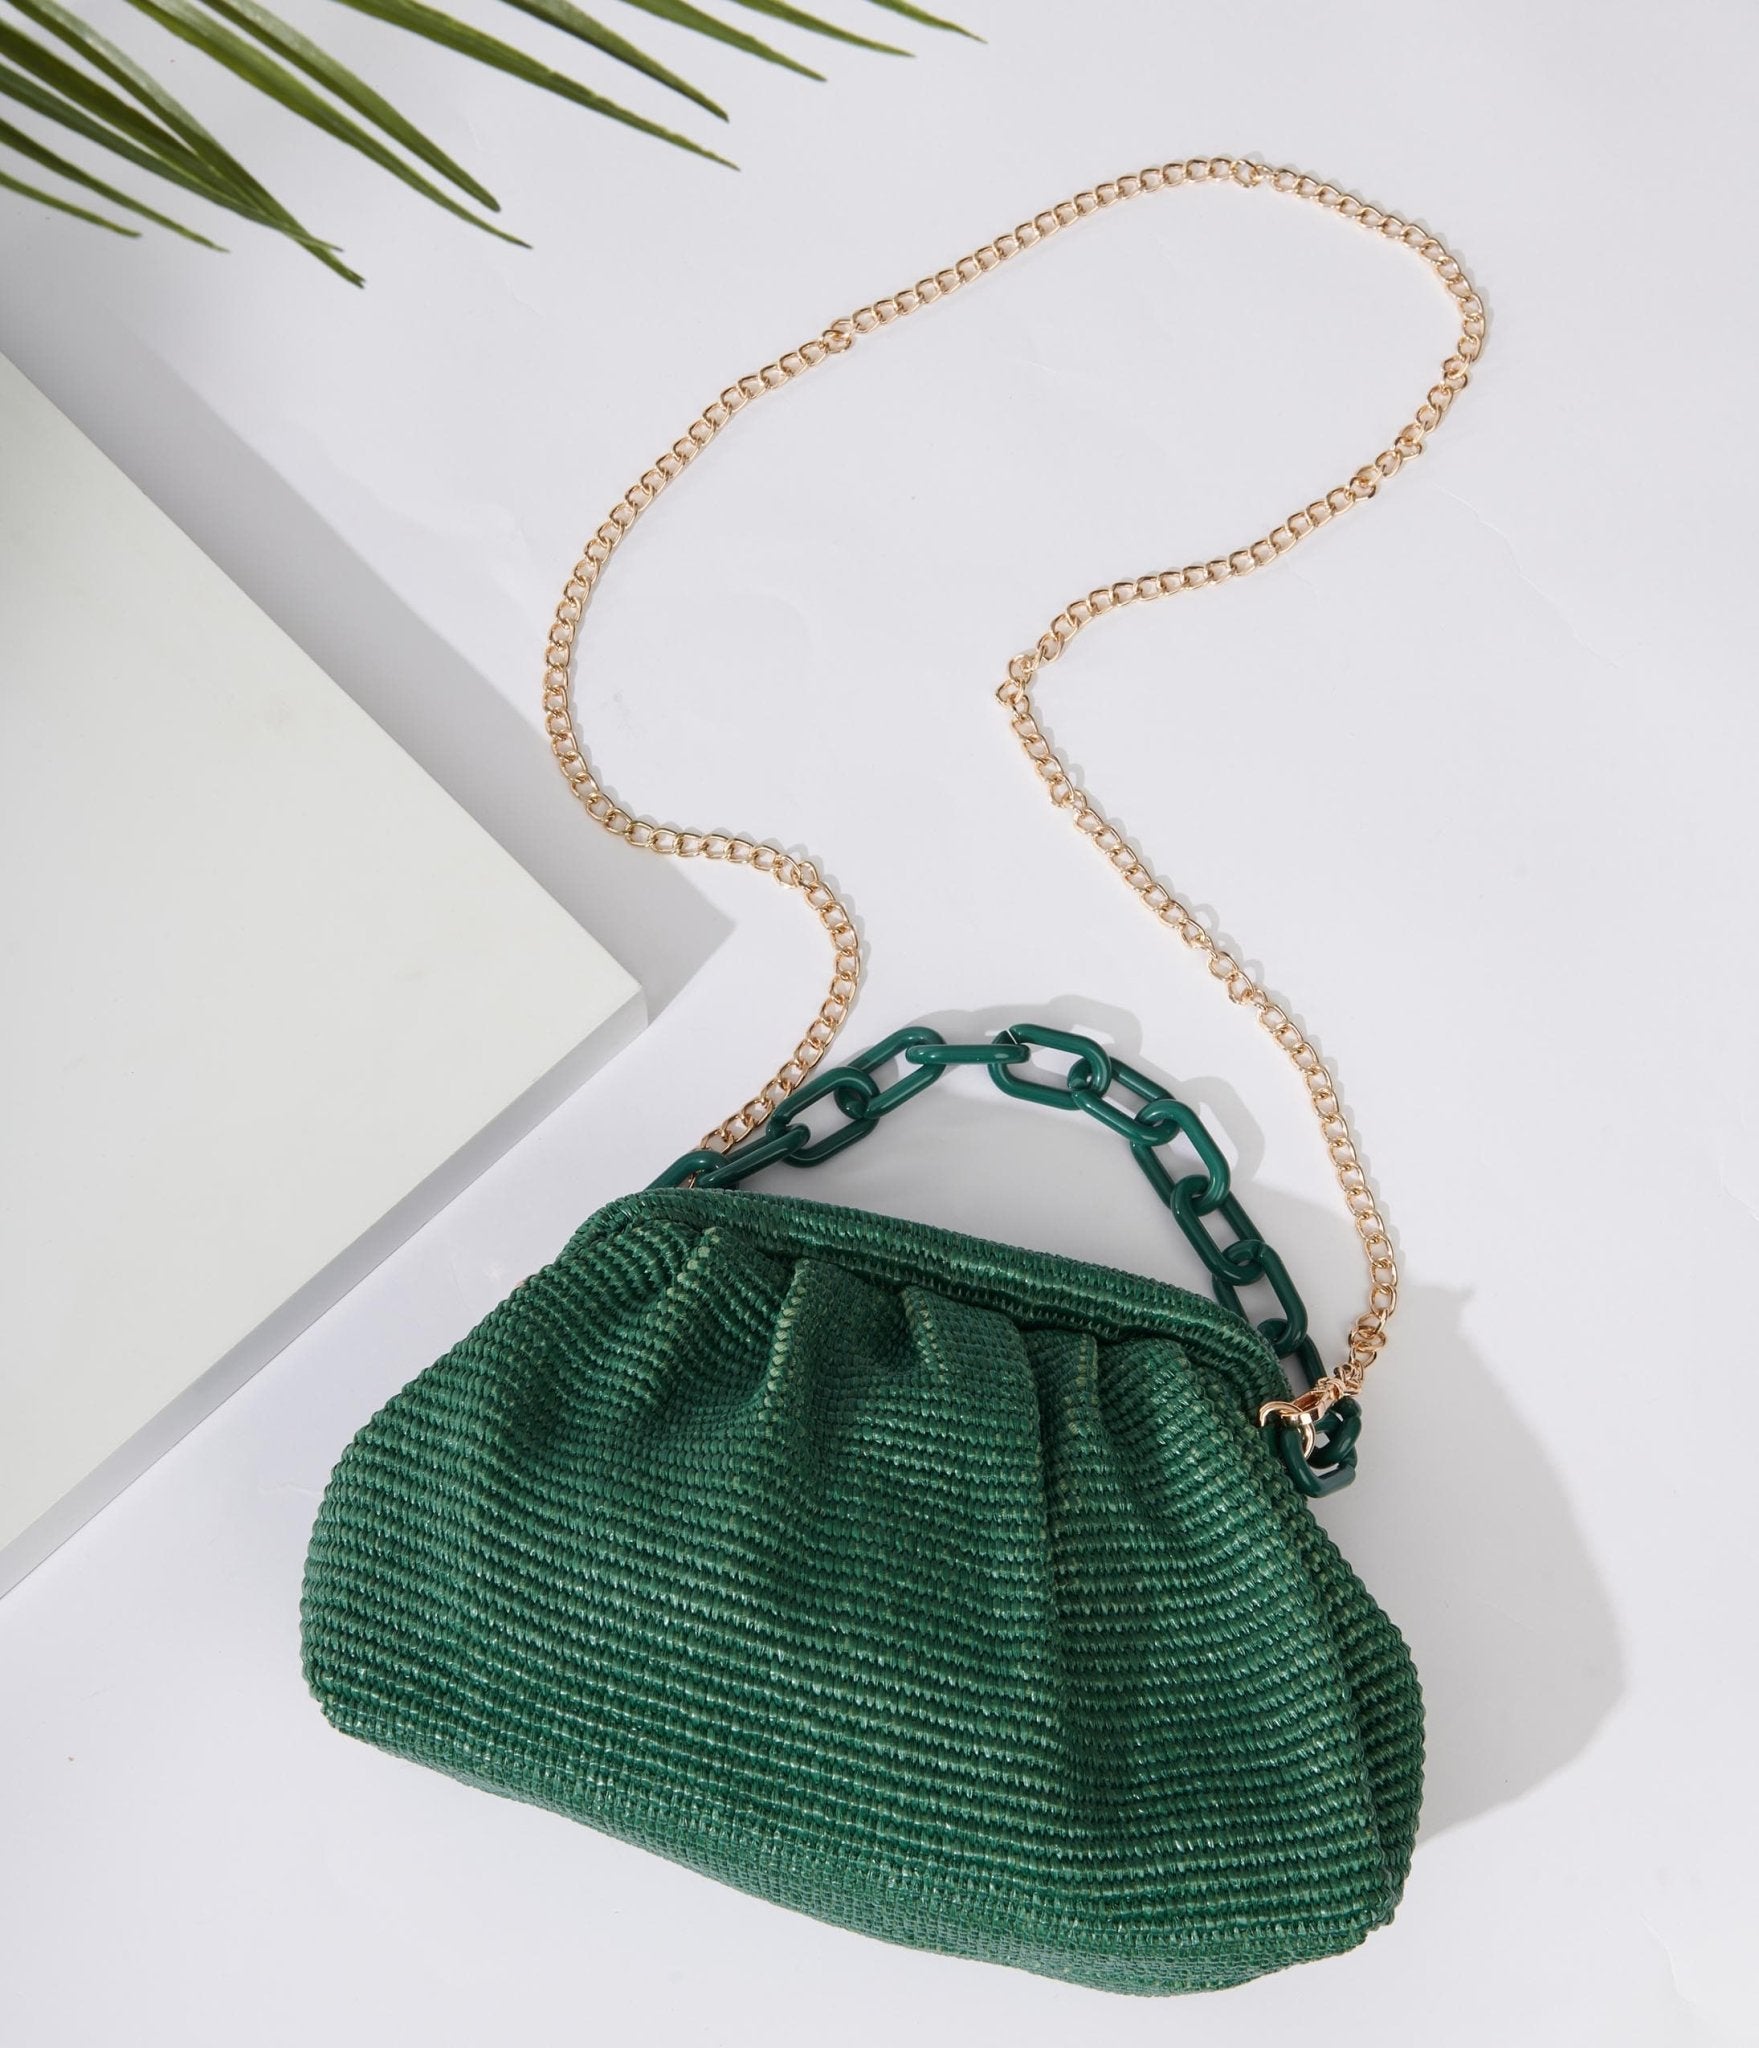 Green Clutches & Evening Bags | Dillard's